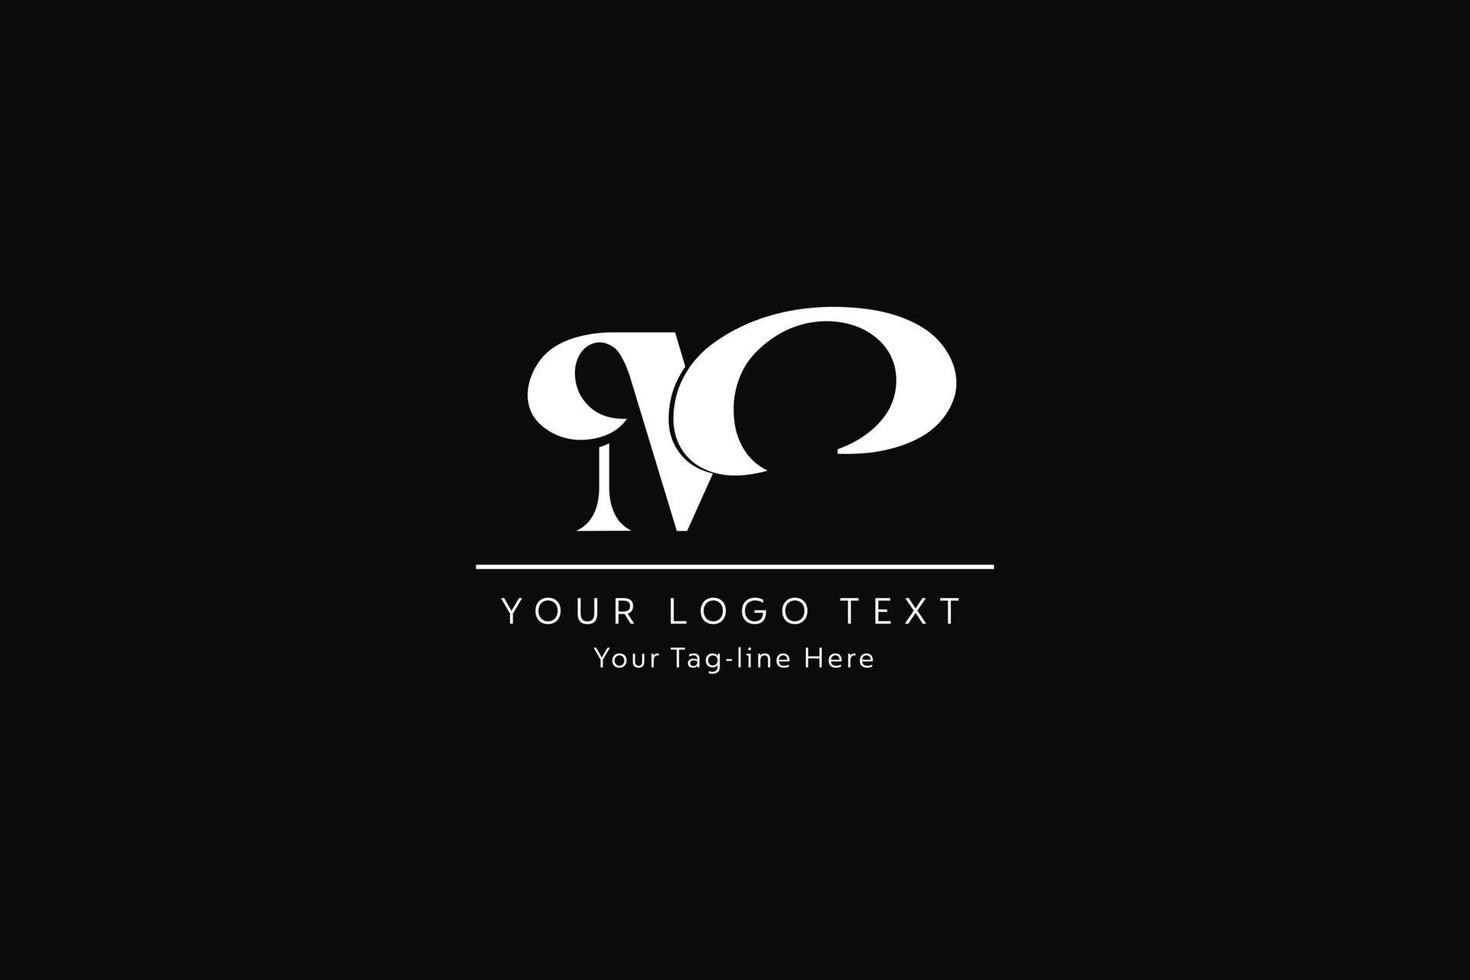 diseño del logotipo de la letra mo. Ilustración de vector de icono de letras om moderno creativo.